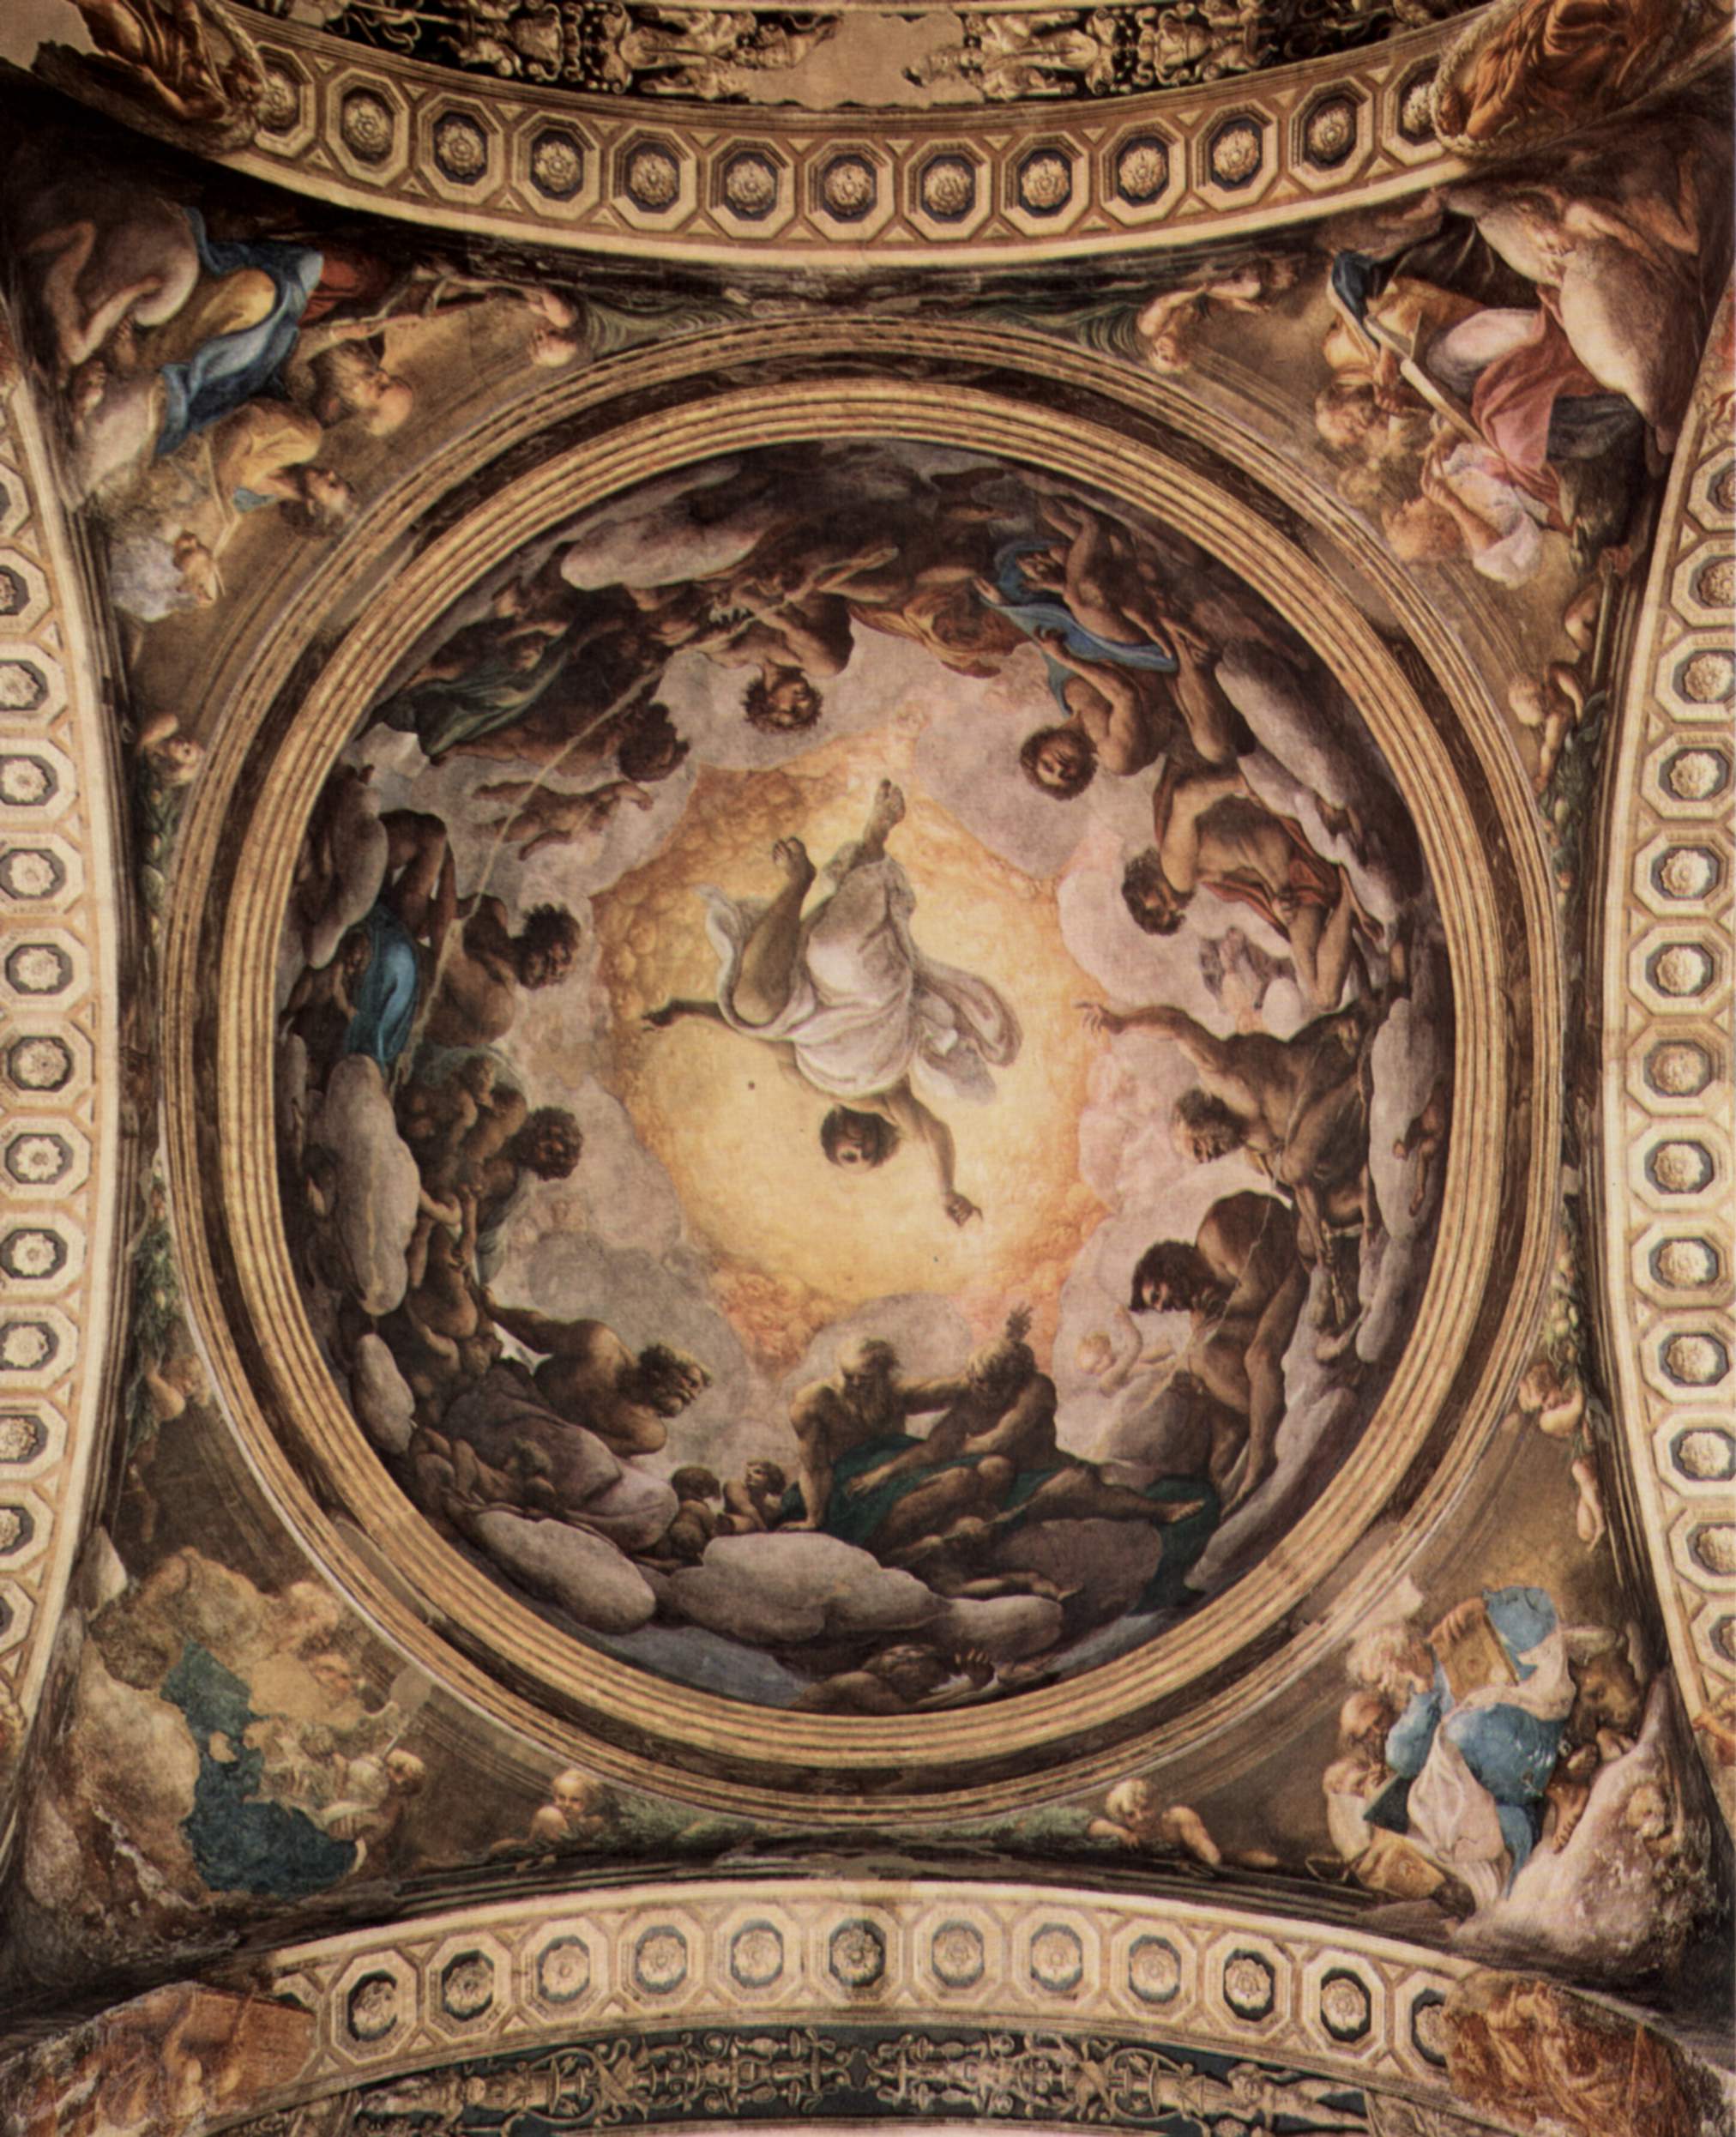 La visione di San Giovanni a Padmos by Antonio Allegri (Correggio) - 1520-1522 - 969 cm × 889 cm 